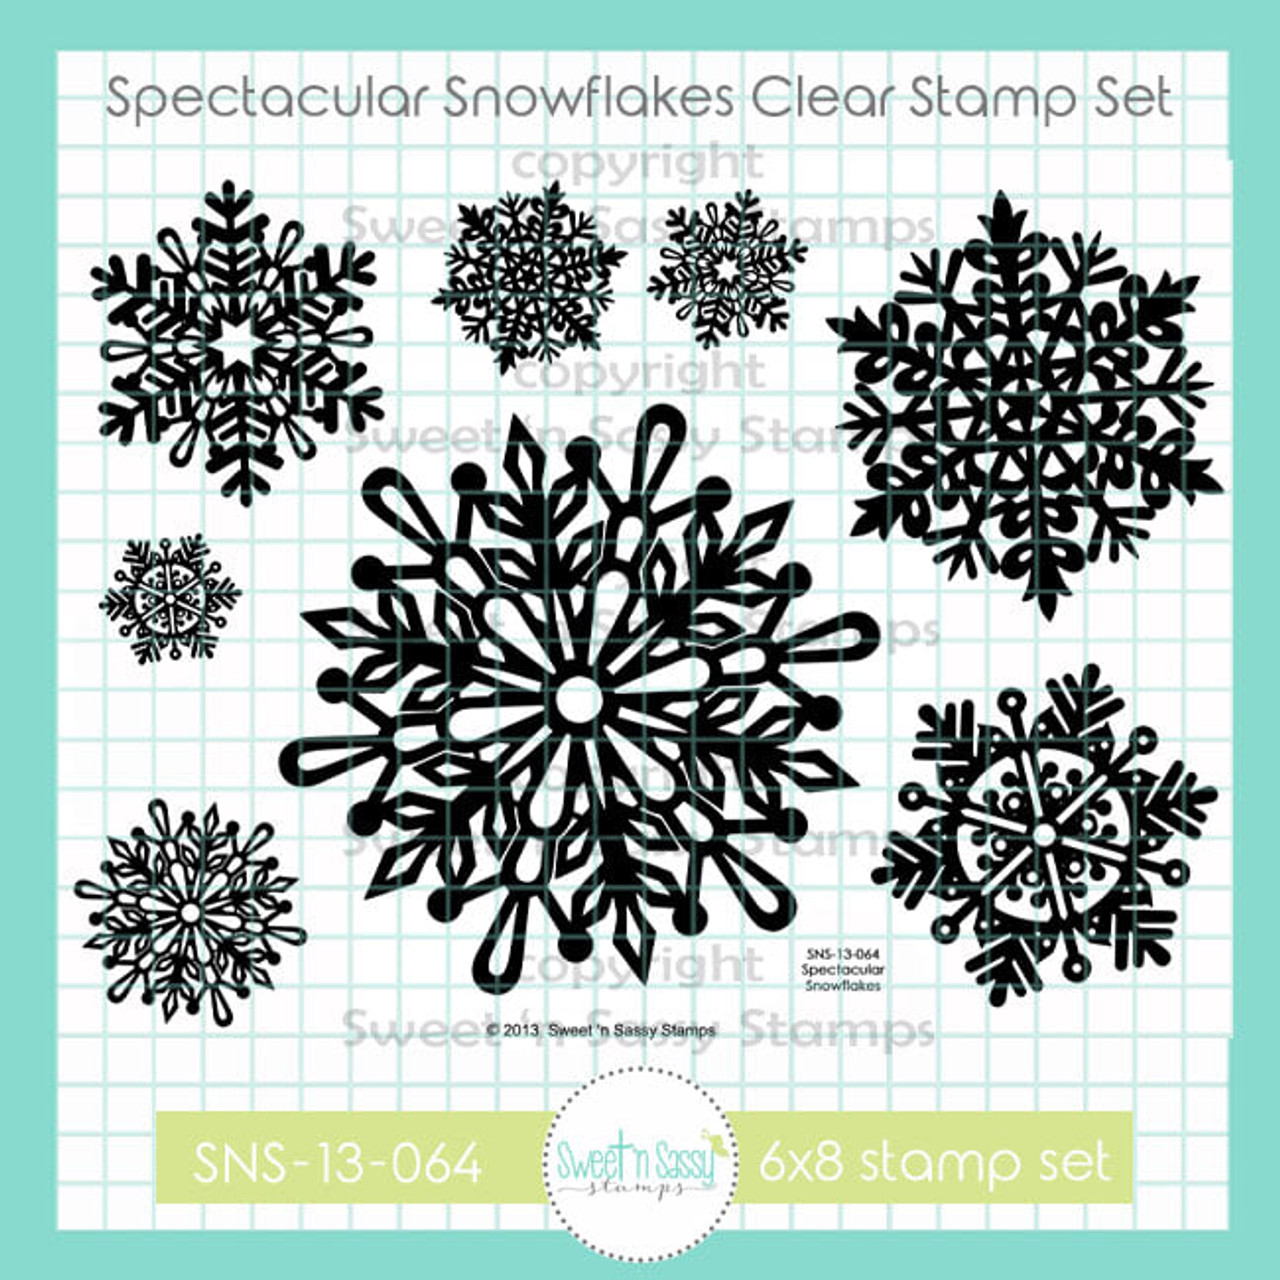 25 FREE Snowflake Digital Stamps – Stamping